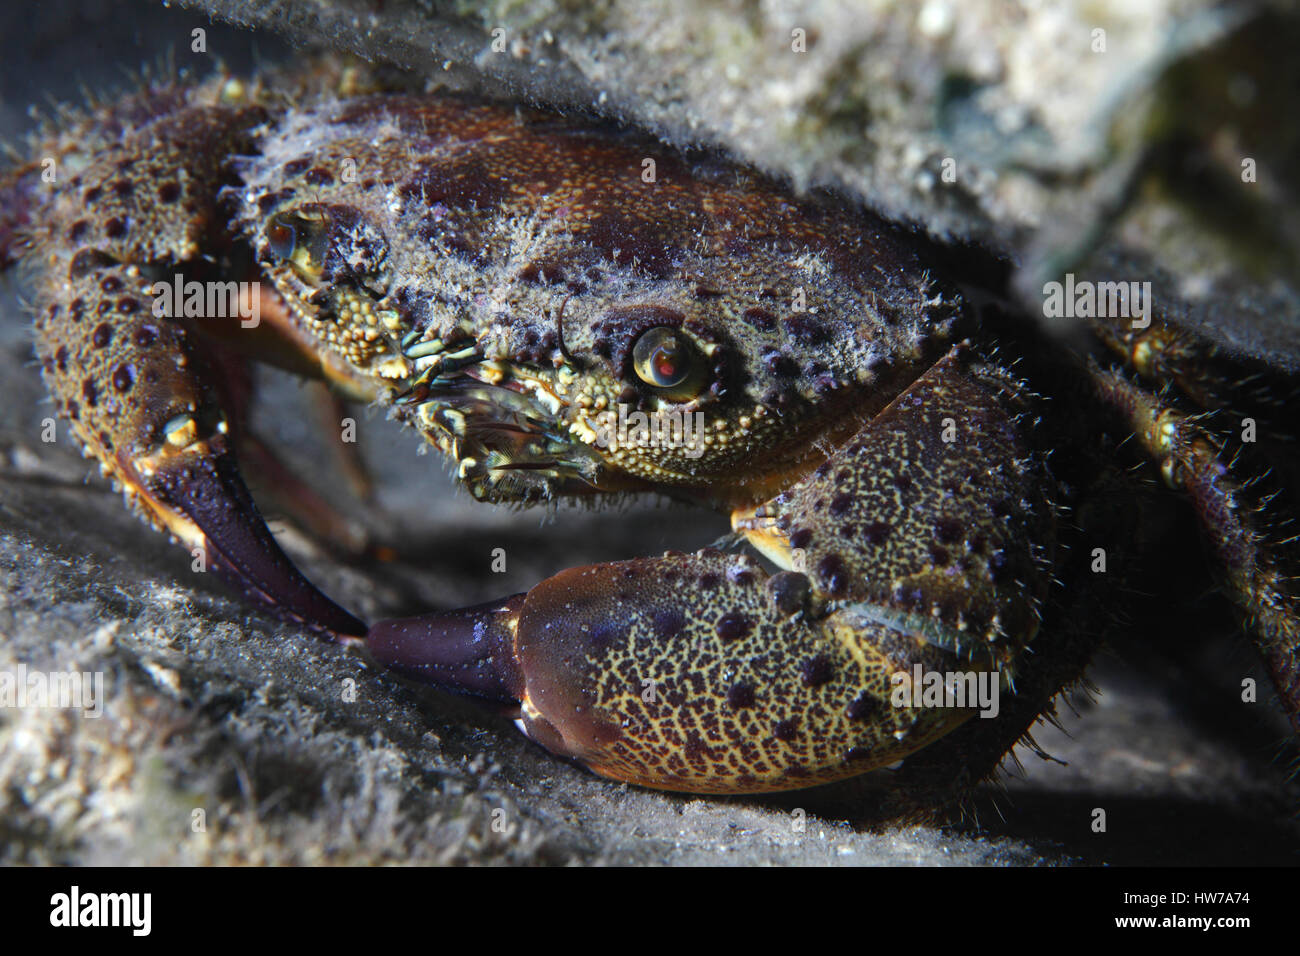 Round crab (Xantho poressa) underwater in the Mediterranean Sea Stock Photo